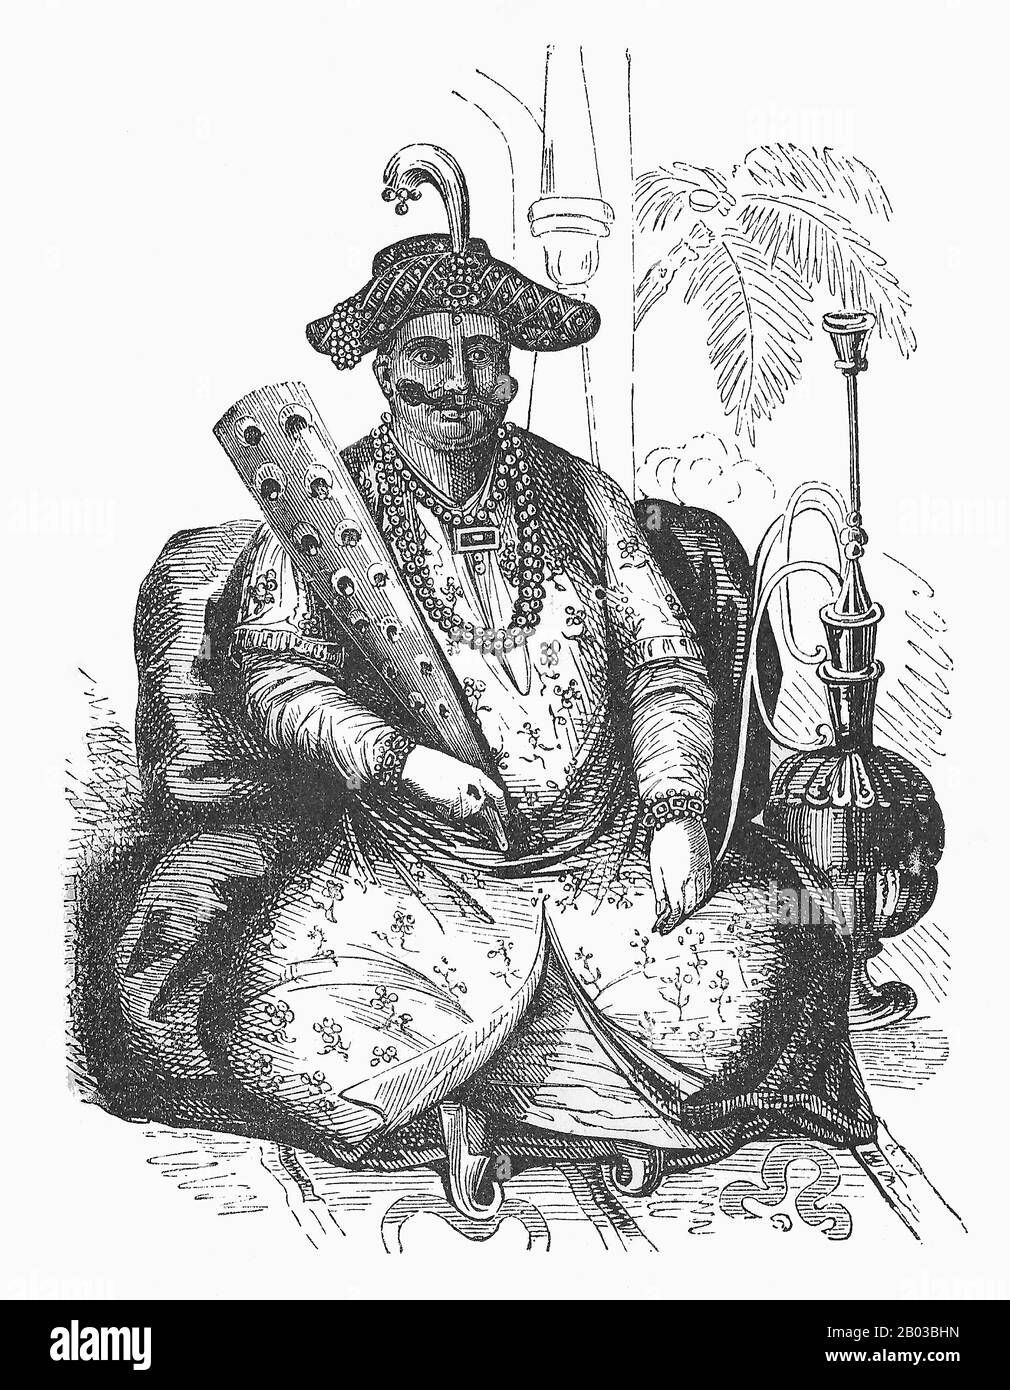 Shuja Shah Abdali Durrani (1785-1842), conosciuto anche come Shoja Shah, fu il quinto Emiro dell'Afghanistan, che governò per la prima volta l'Impero Durrani dal 1803 al 1809. Dopo aver costretto la deposizione del fratello Zaman Shah nel 1801, dopo averlo accecato, si proclamò re di Afghanistan, ma non ascese formalmente fino al 1803, dopo aver sconfitto il fratellastro Mahmud Shah. Foto Stock